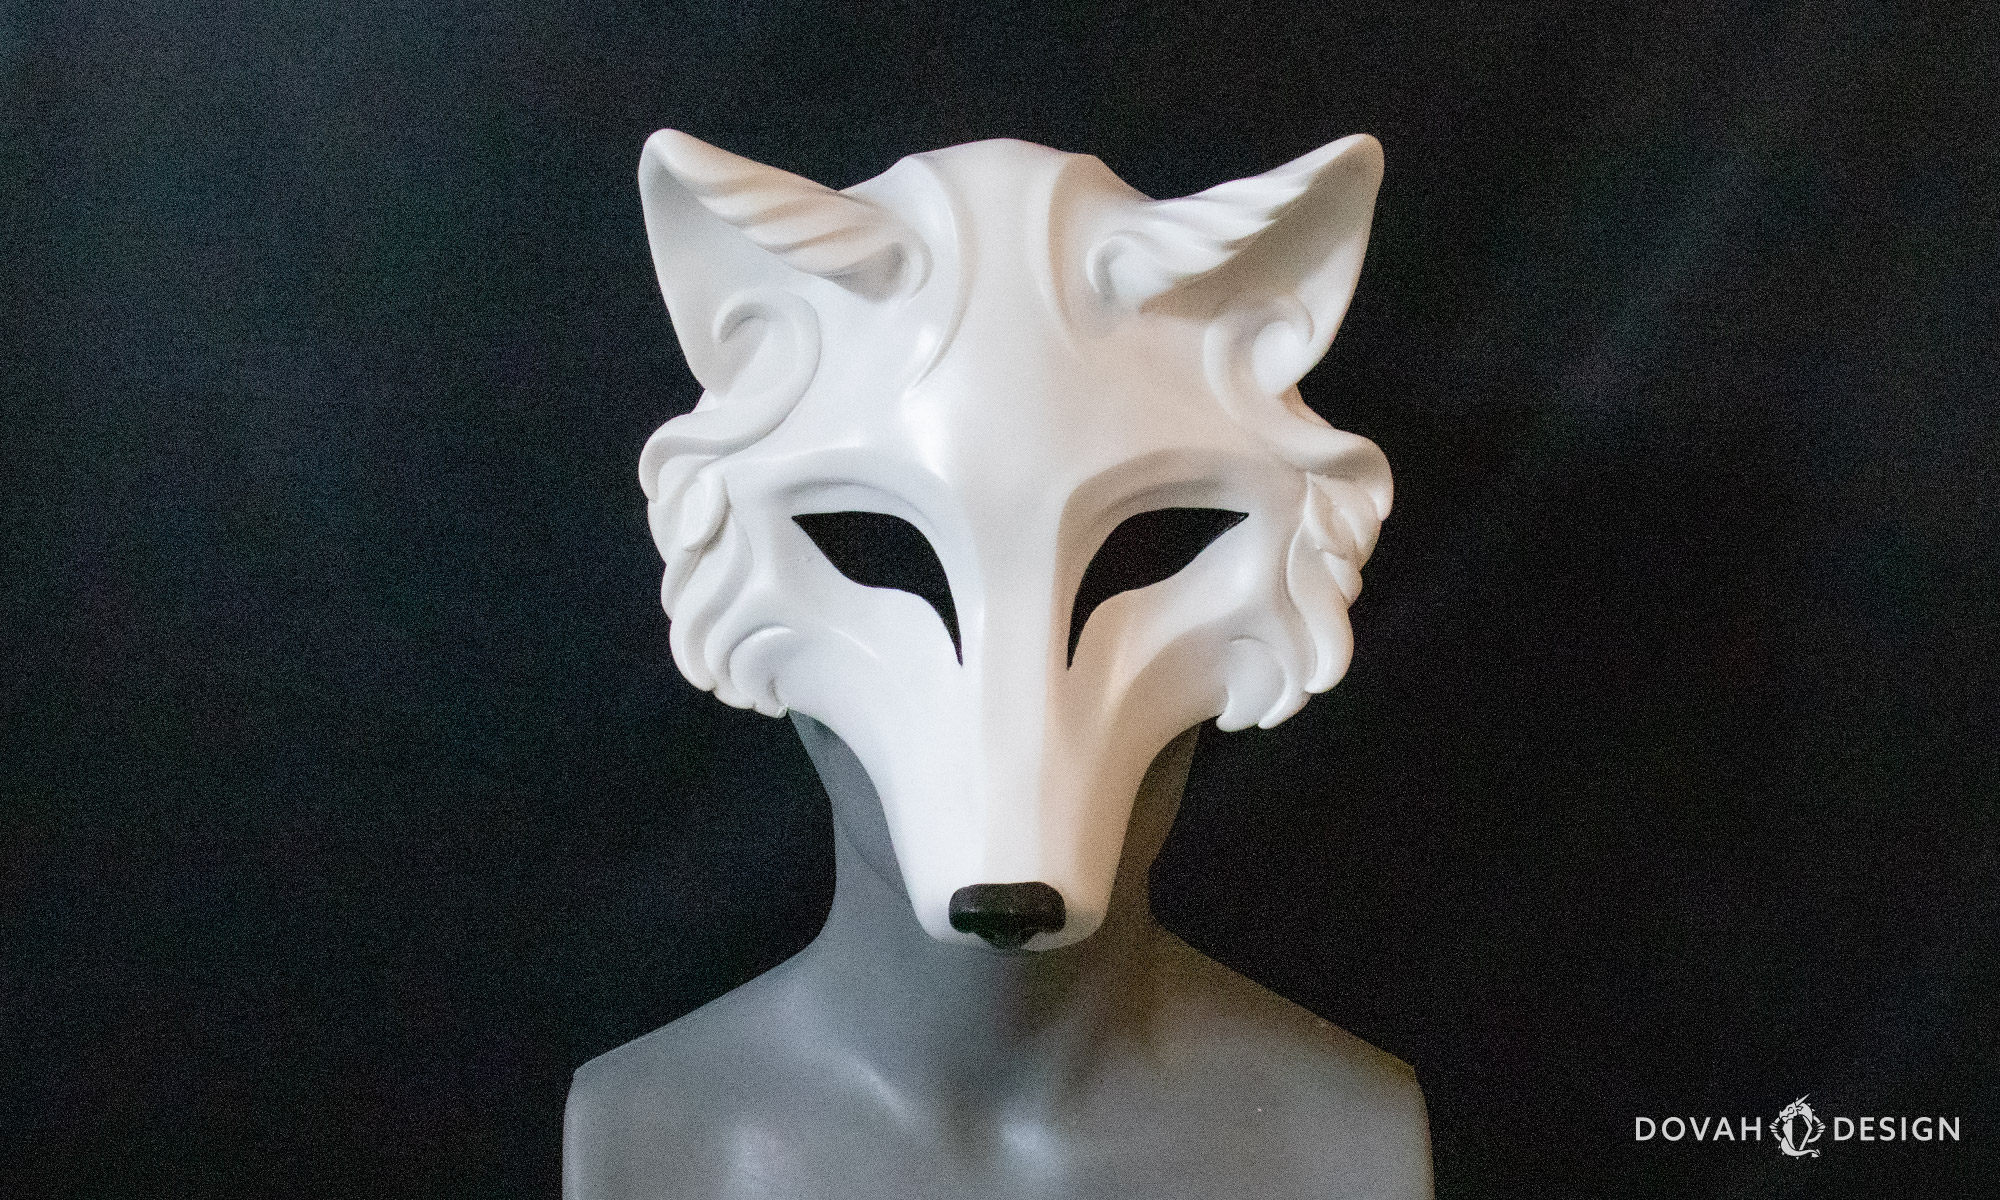 Wolf Mask